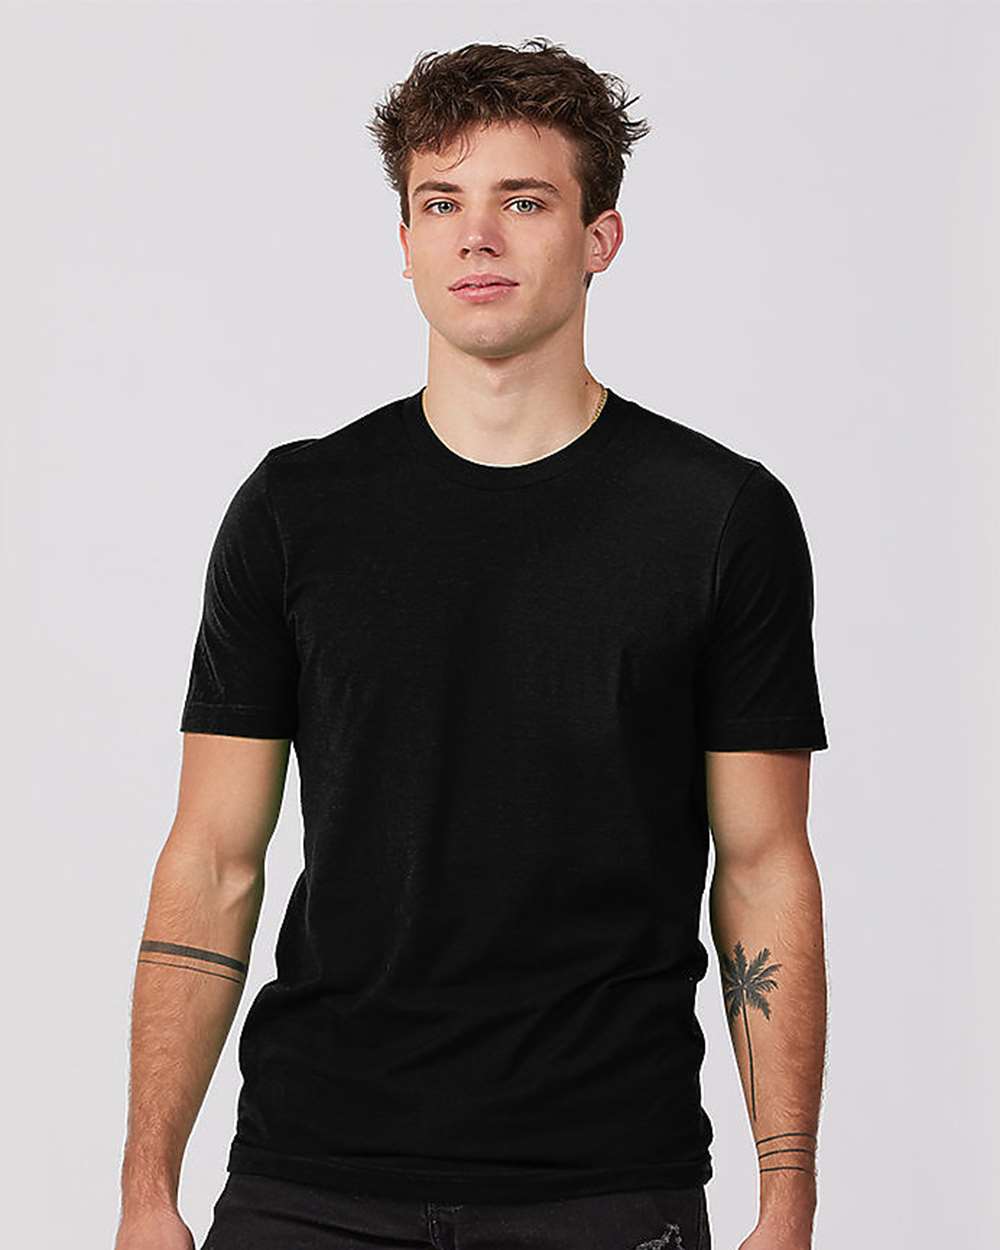 Tultex 541 Unisex Premium Cotton Blend T-Shirt - Black - HIT a Double